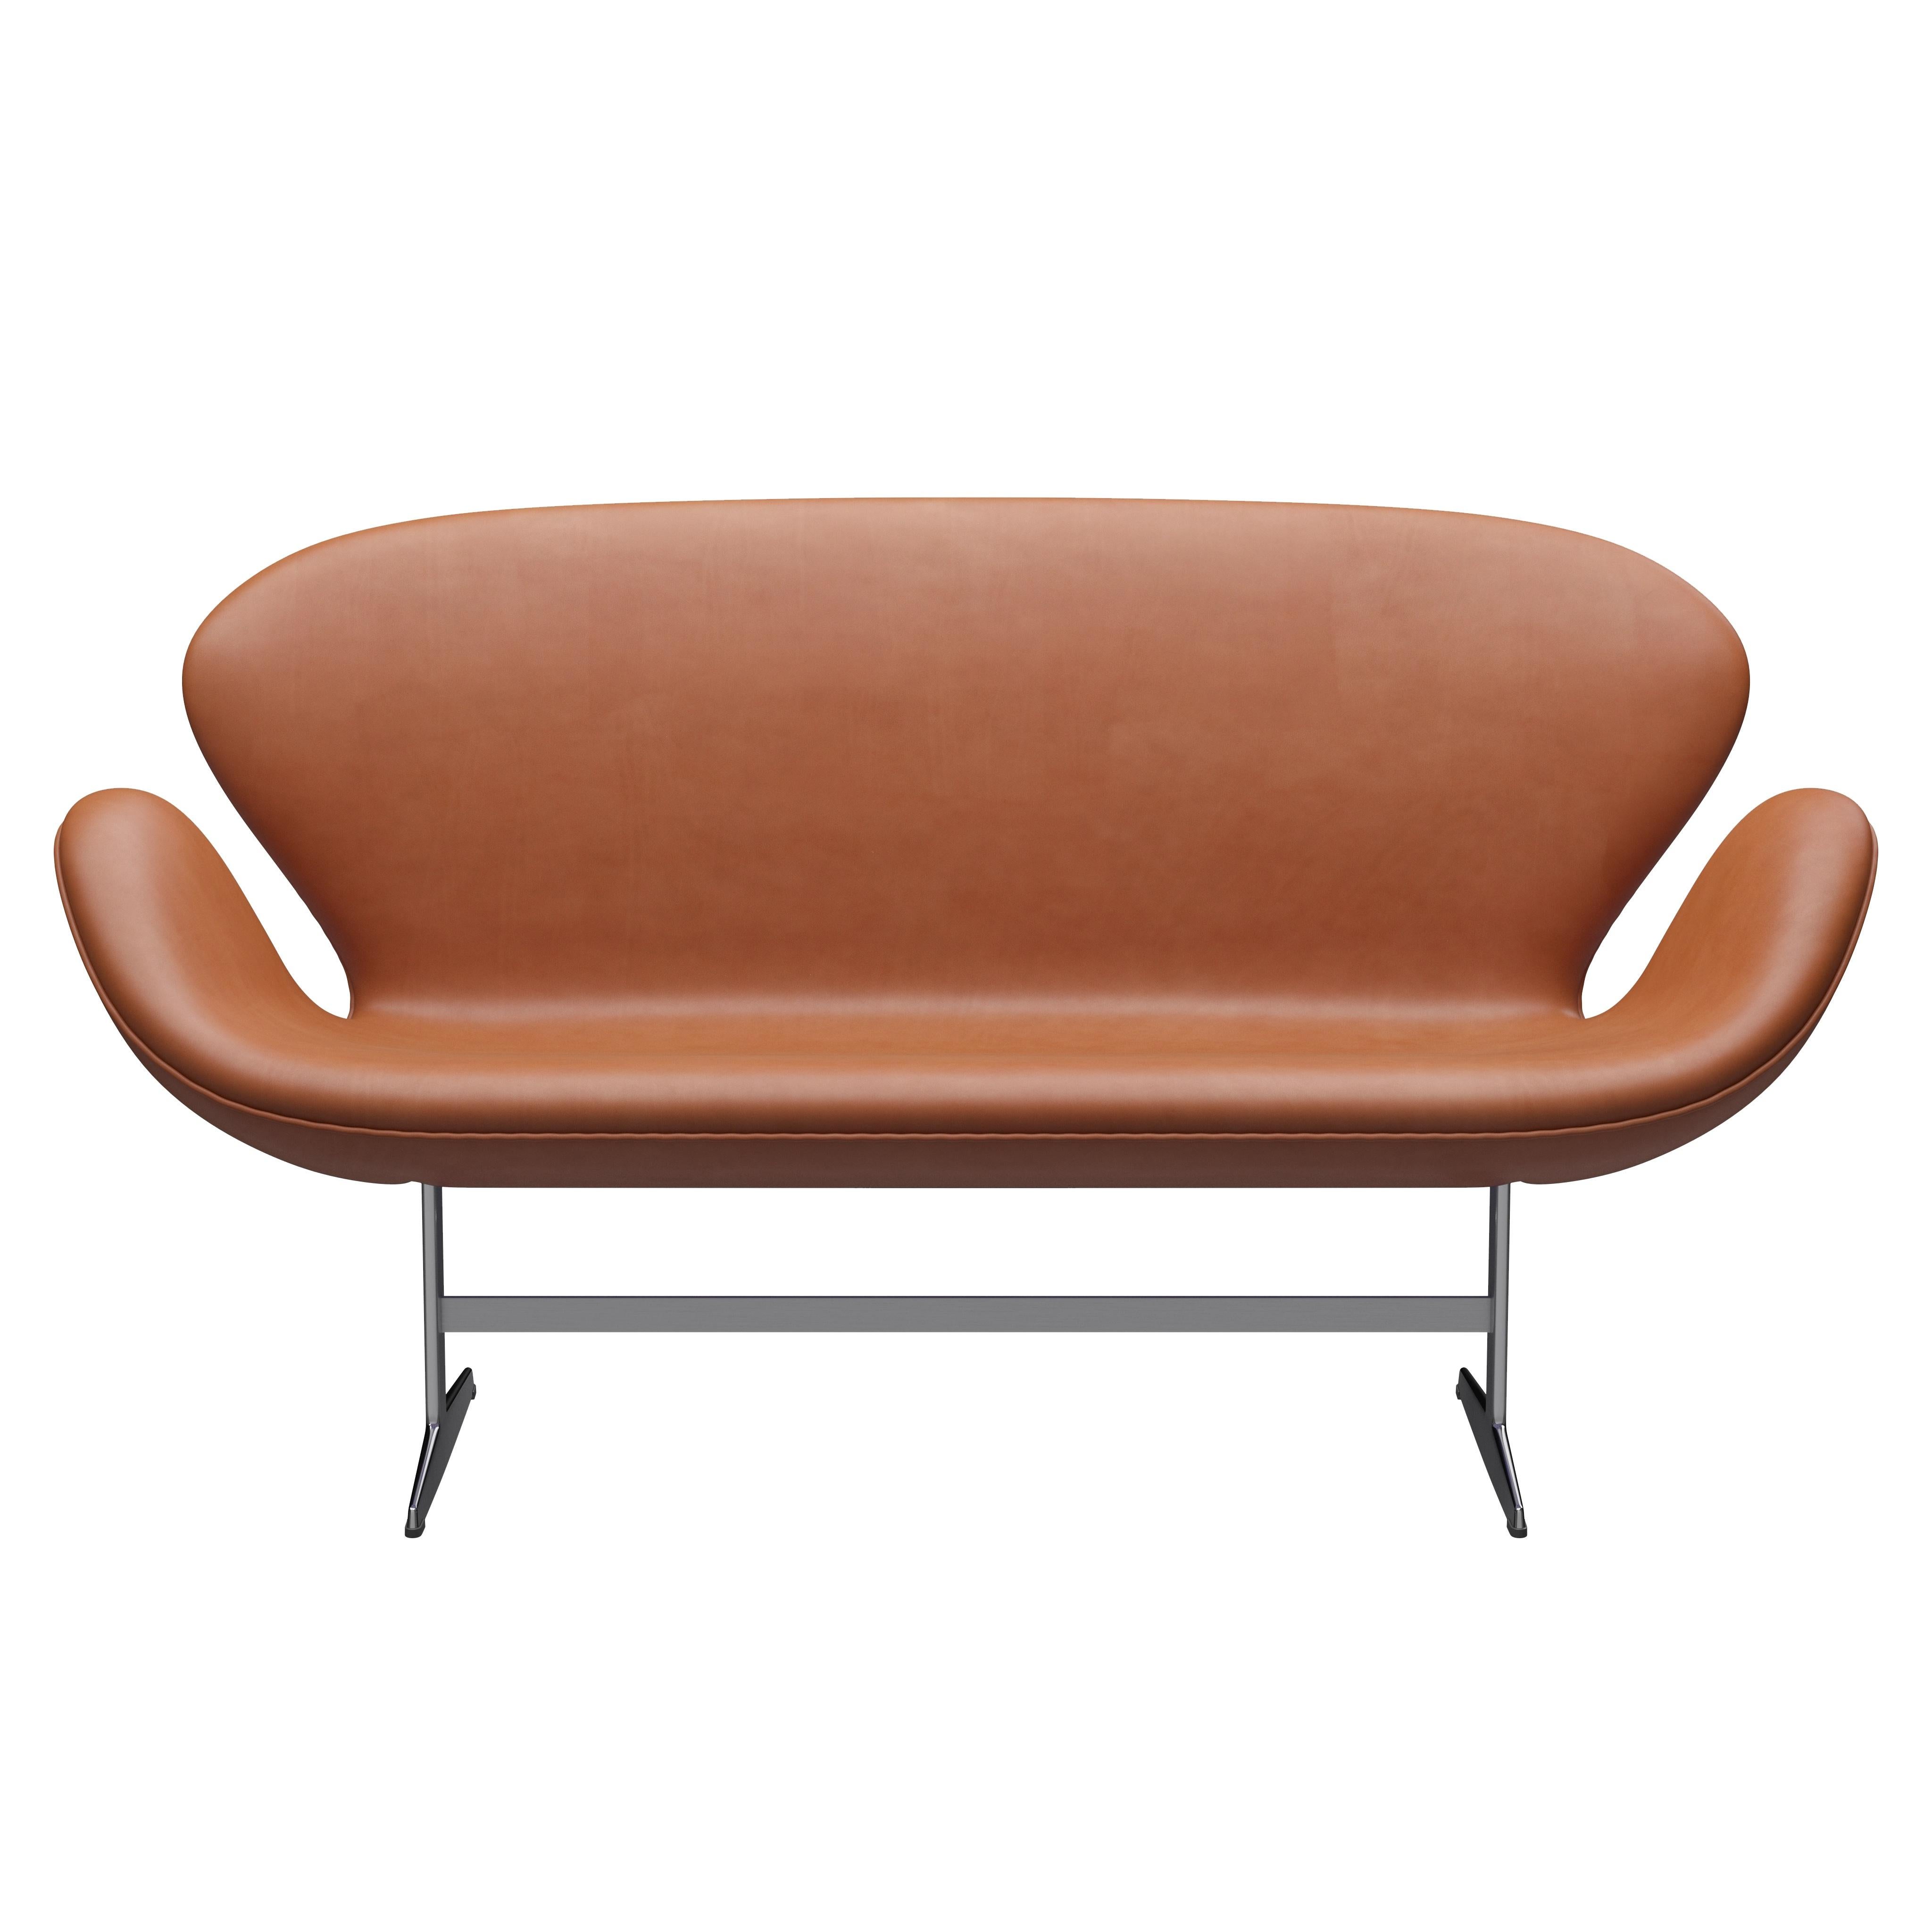 Arne Jacobsen 'Swan' Sofa for Fritz Hansen in Leather Upholstery (Cat. 5) For Sale 6